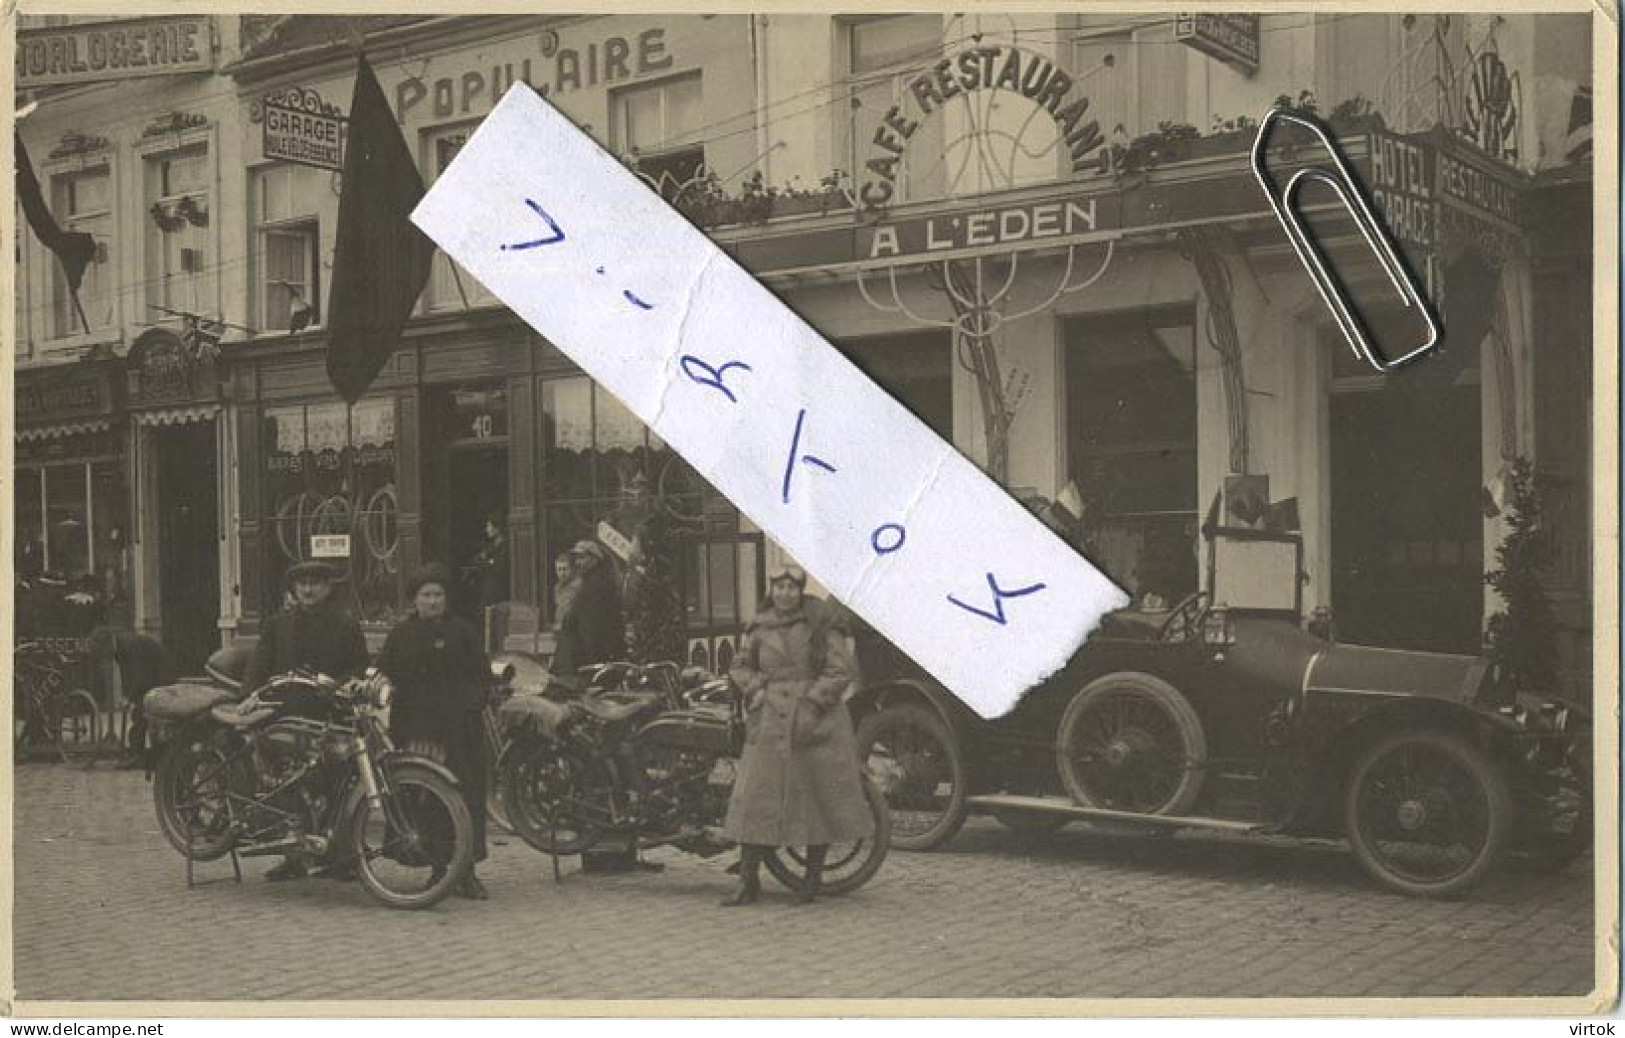 Wavre : Café-Restaurant A L'EDEN : Place Du Sablon 41-42 ( Carte Photo ):  Old Car & Moto's ( Garage Populaire - Velos ) - Wavre